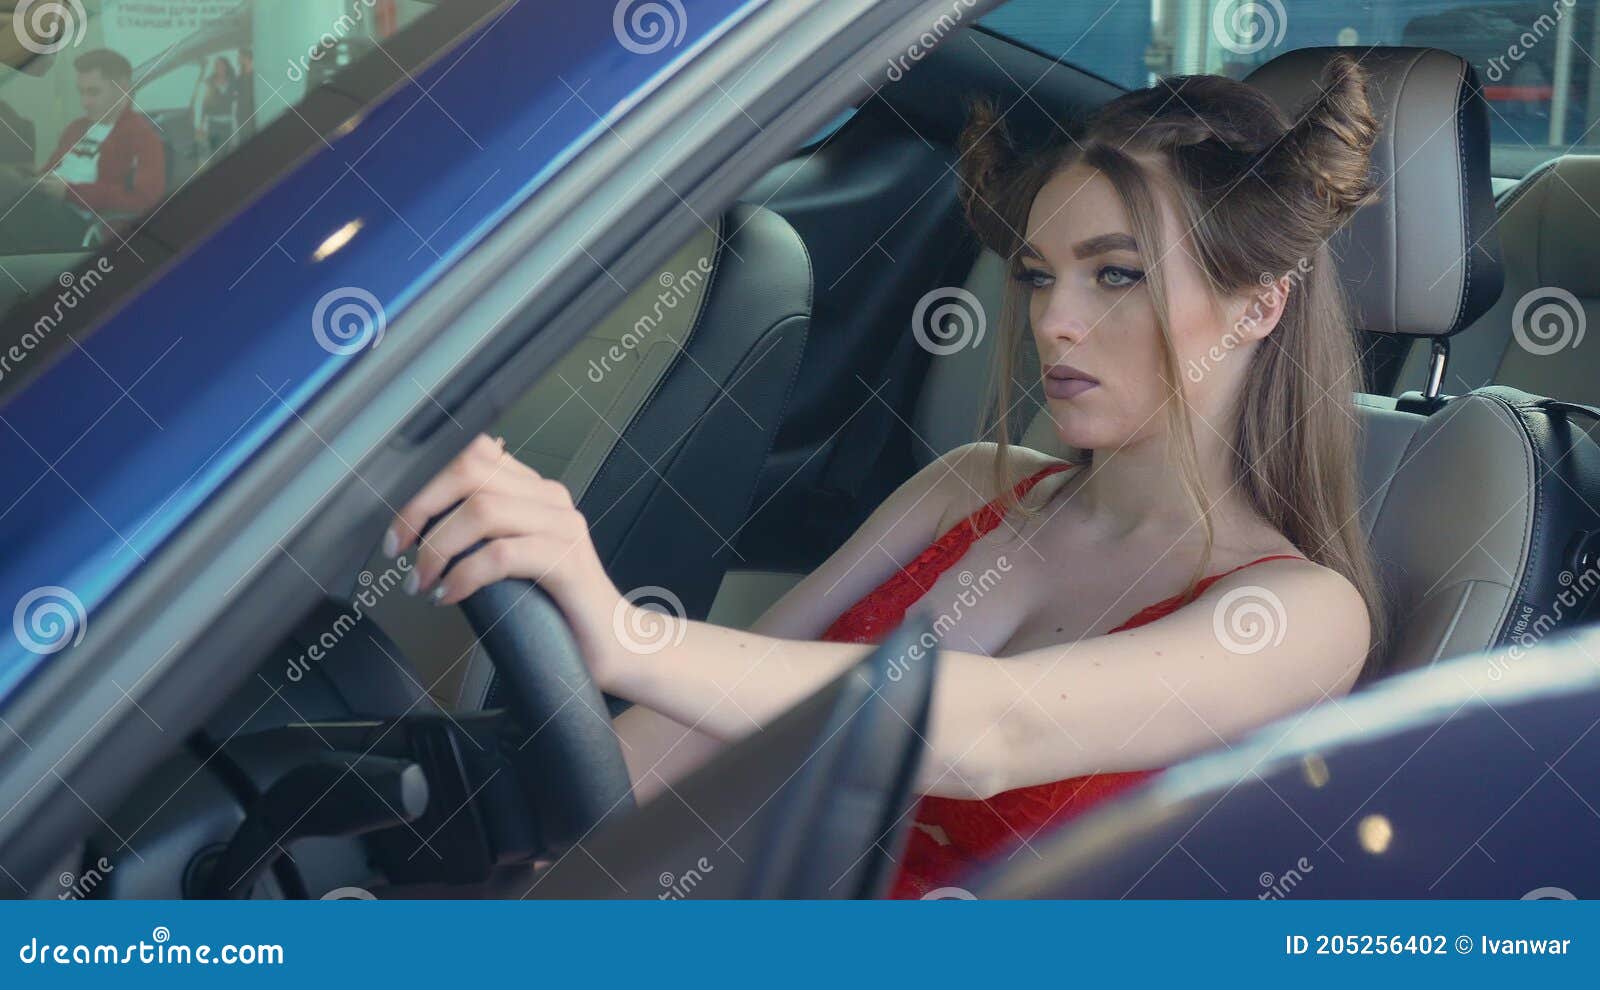 Best of Driving in underwear